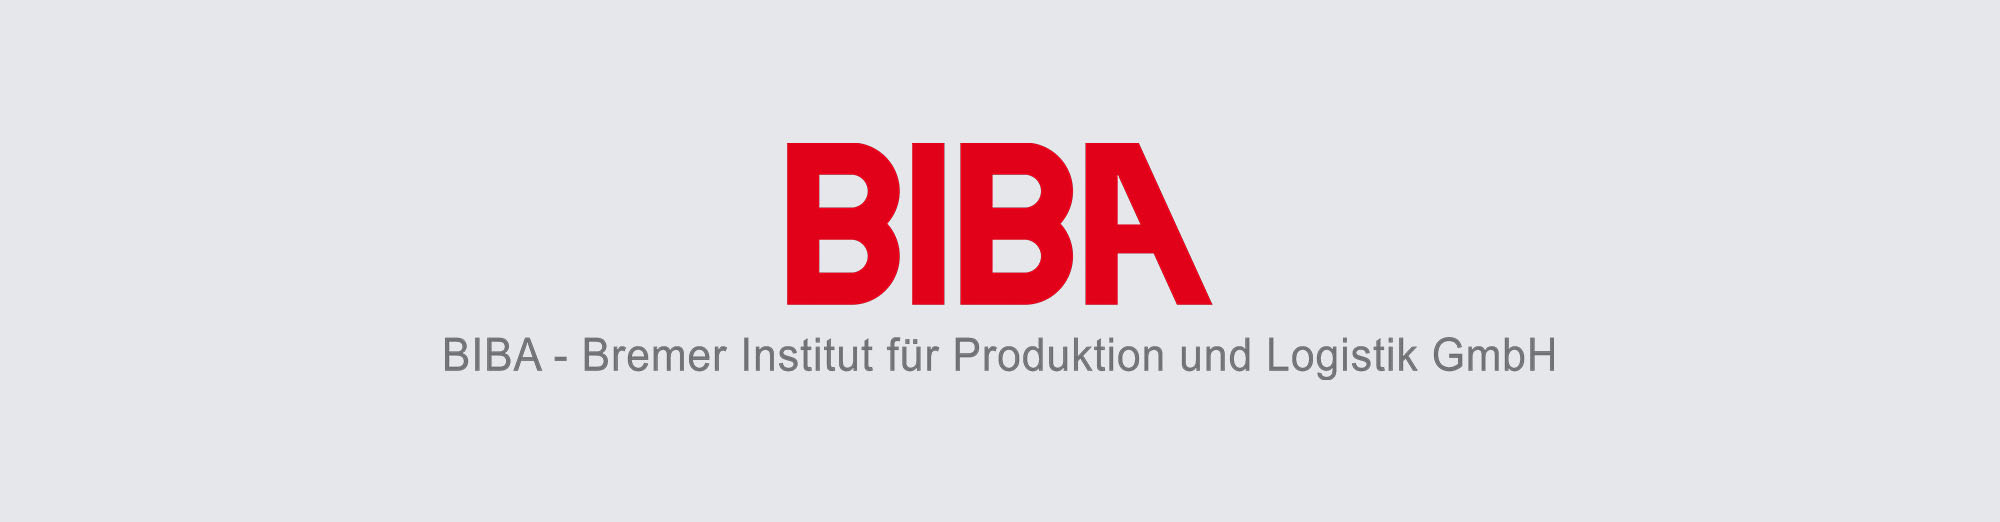 Biba - Bremer Insititut für Produktion und Logistik GmbH